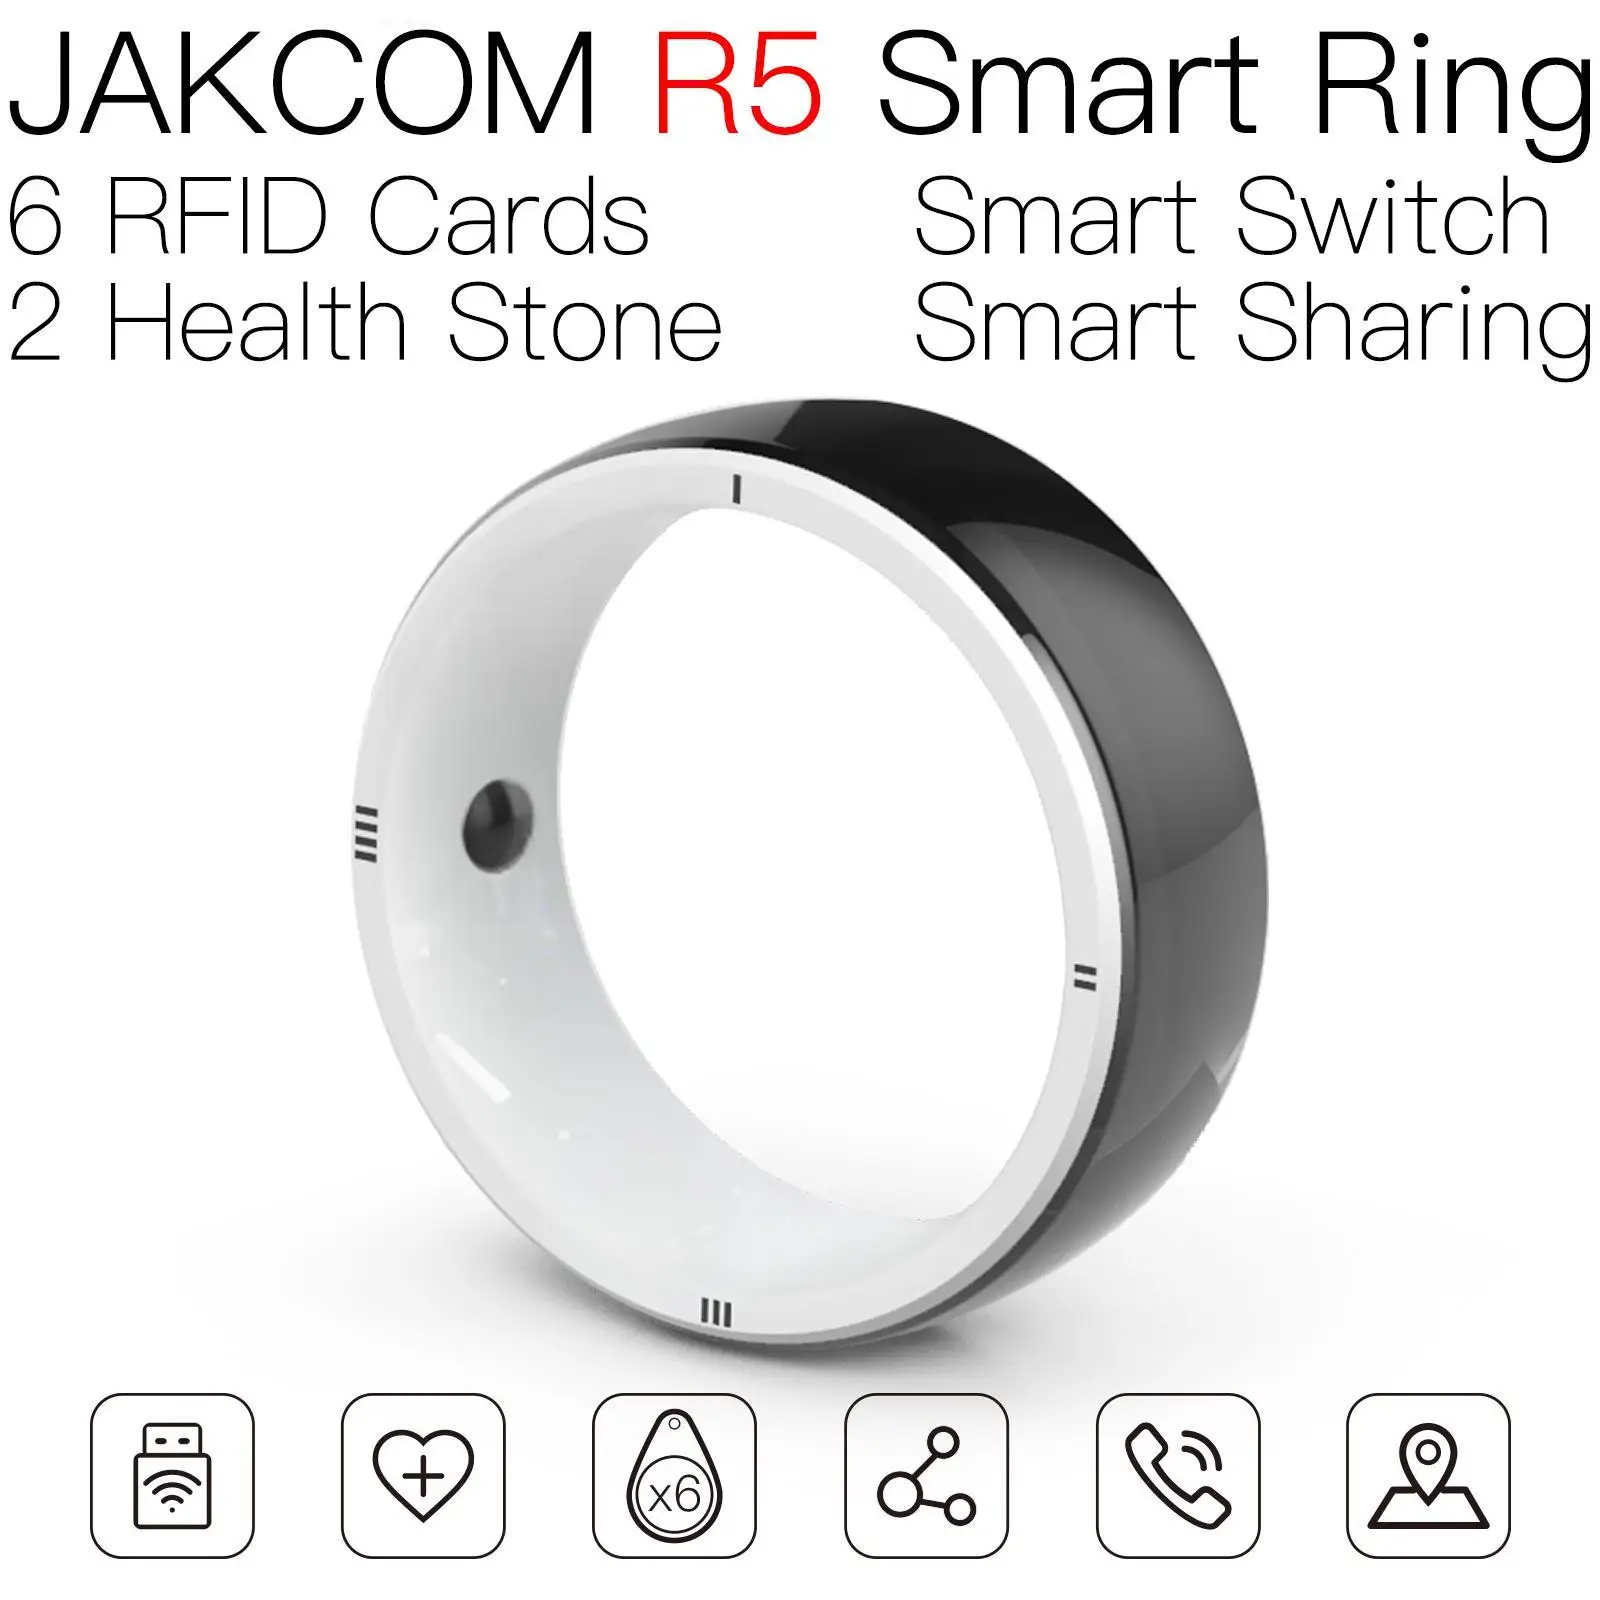 

Умное кольцо JAKCOM R5, новее, чем rfid-метка на дереве, ndef 1k, тест на копию uid, стандартный металлический ключ, клей t5557 onyx rcr, светодиодные сигналы и тормоз